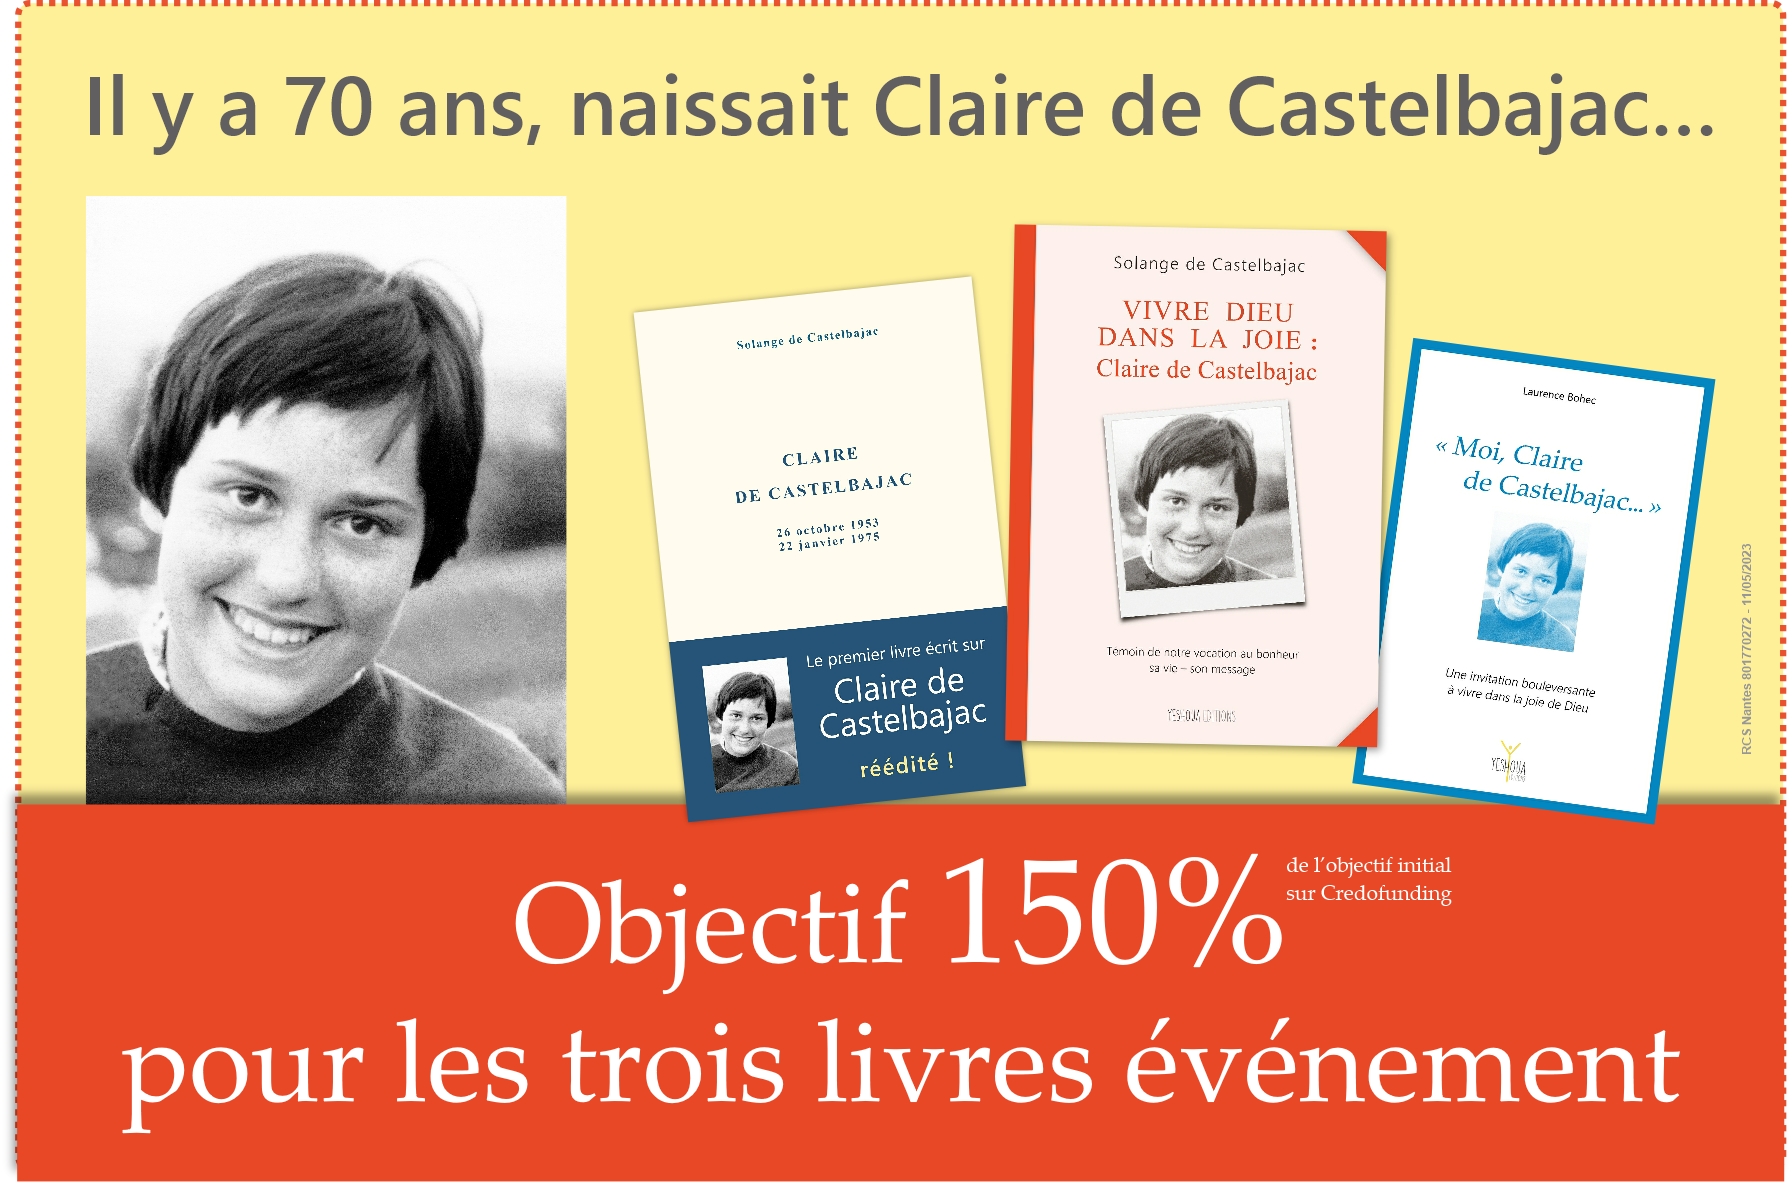 Objectif 150% : trois livres événement pour faire connaître Claire de Castelbajac 